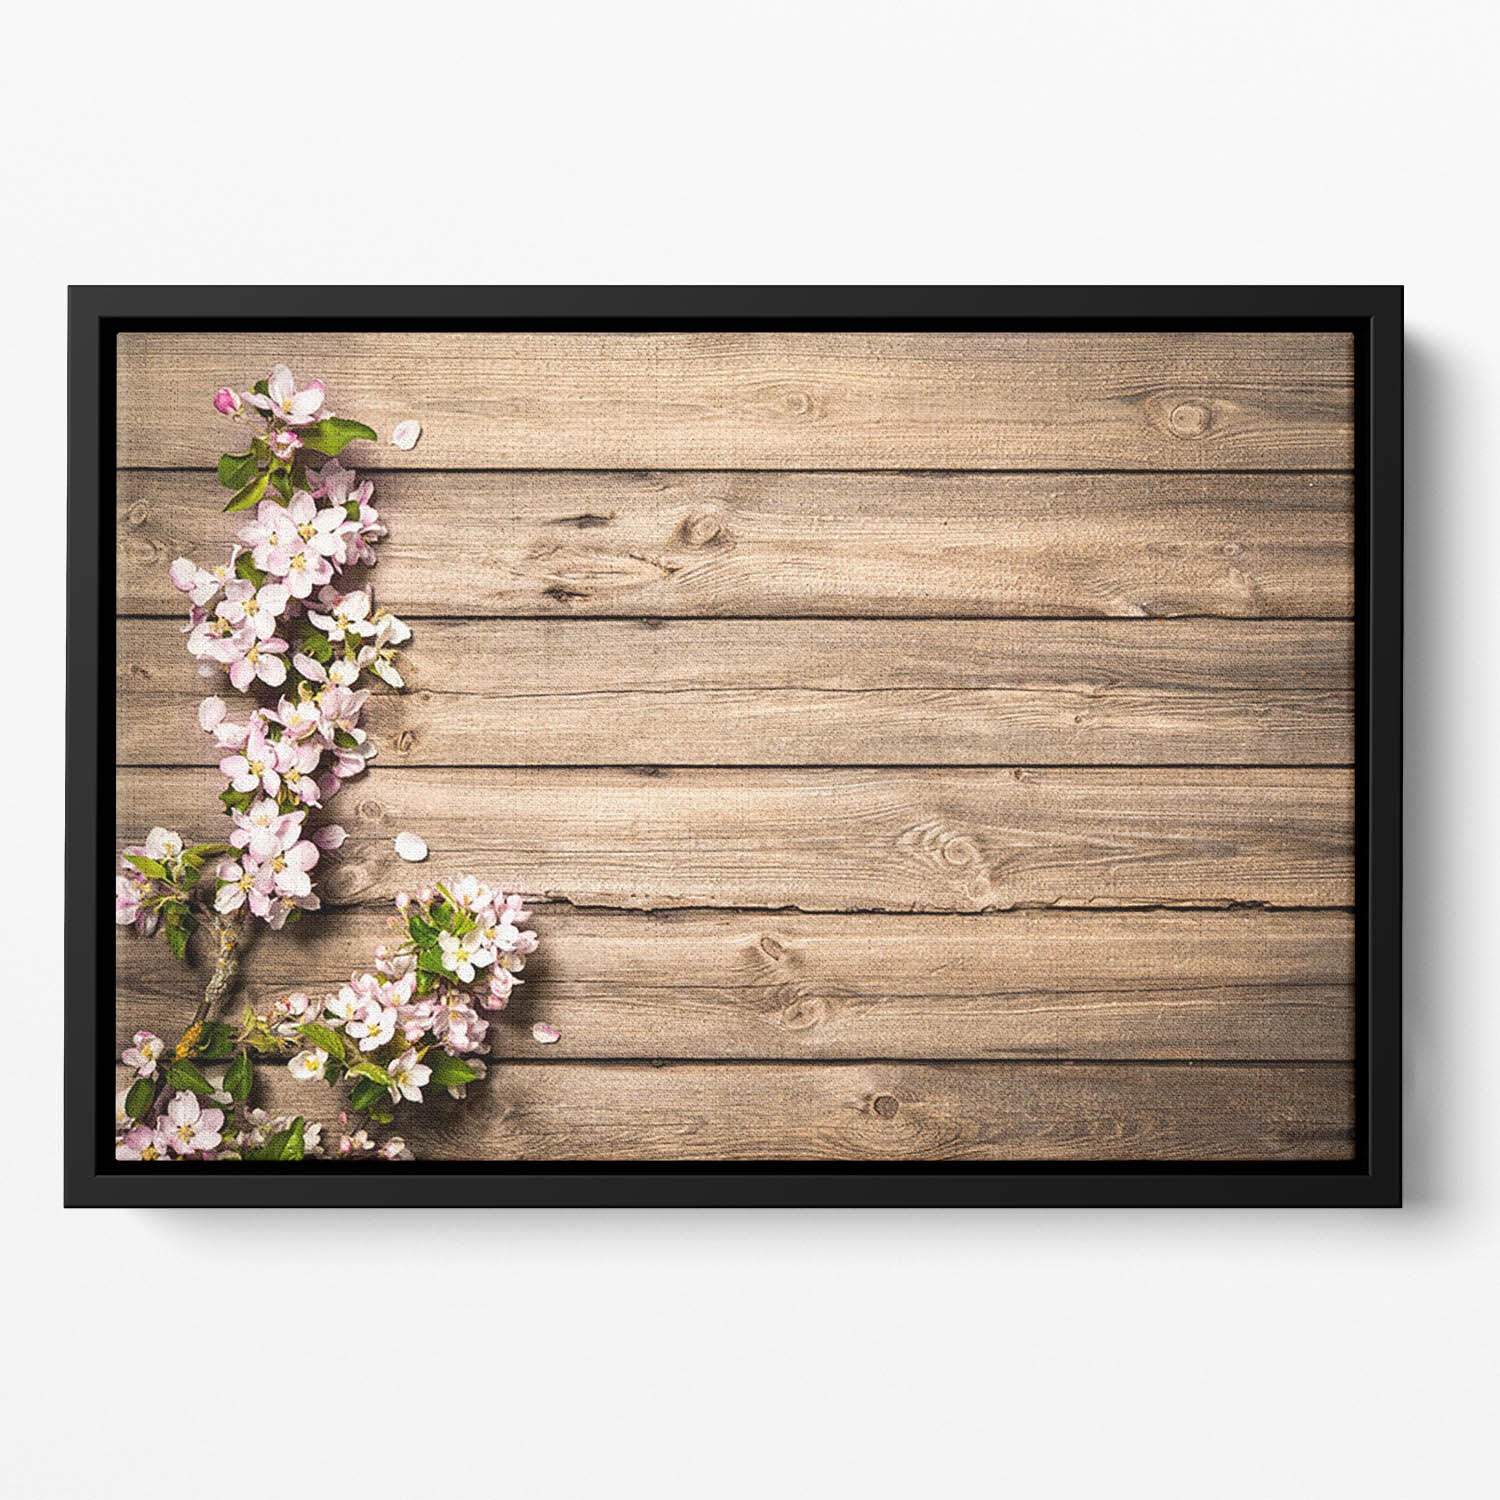 Spring flowering branch on wooden background Floating Framed Canvas